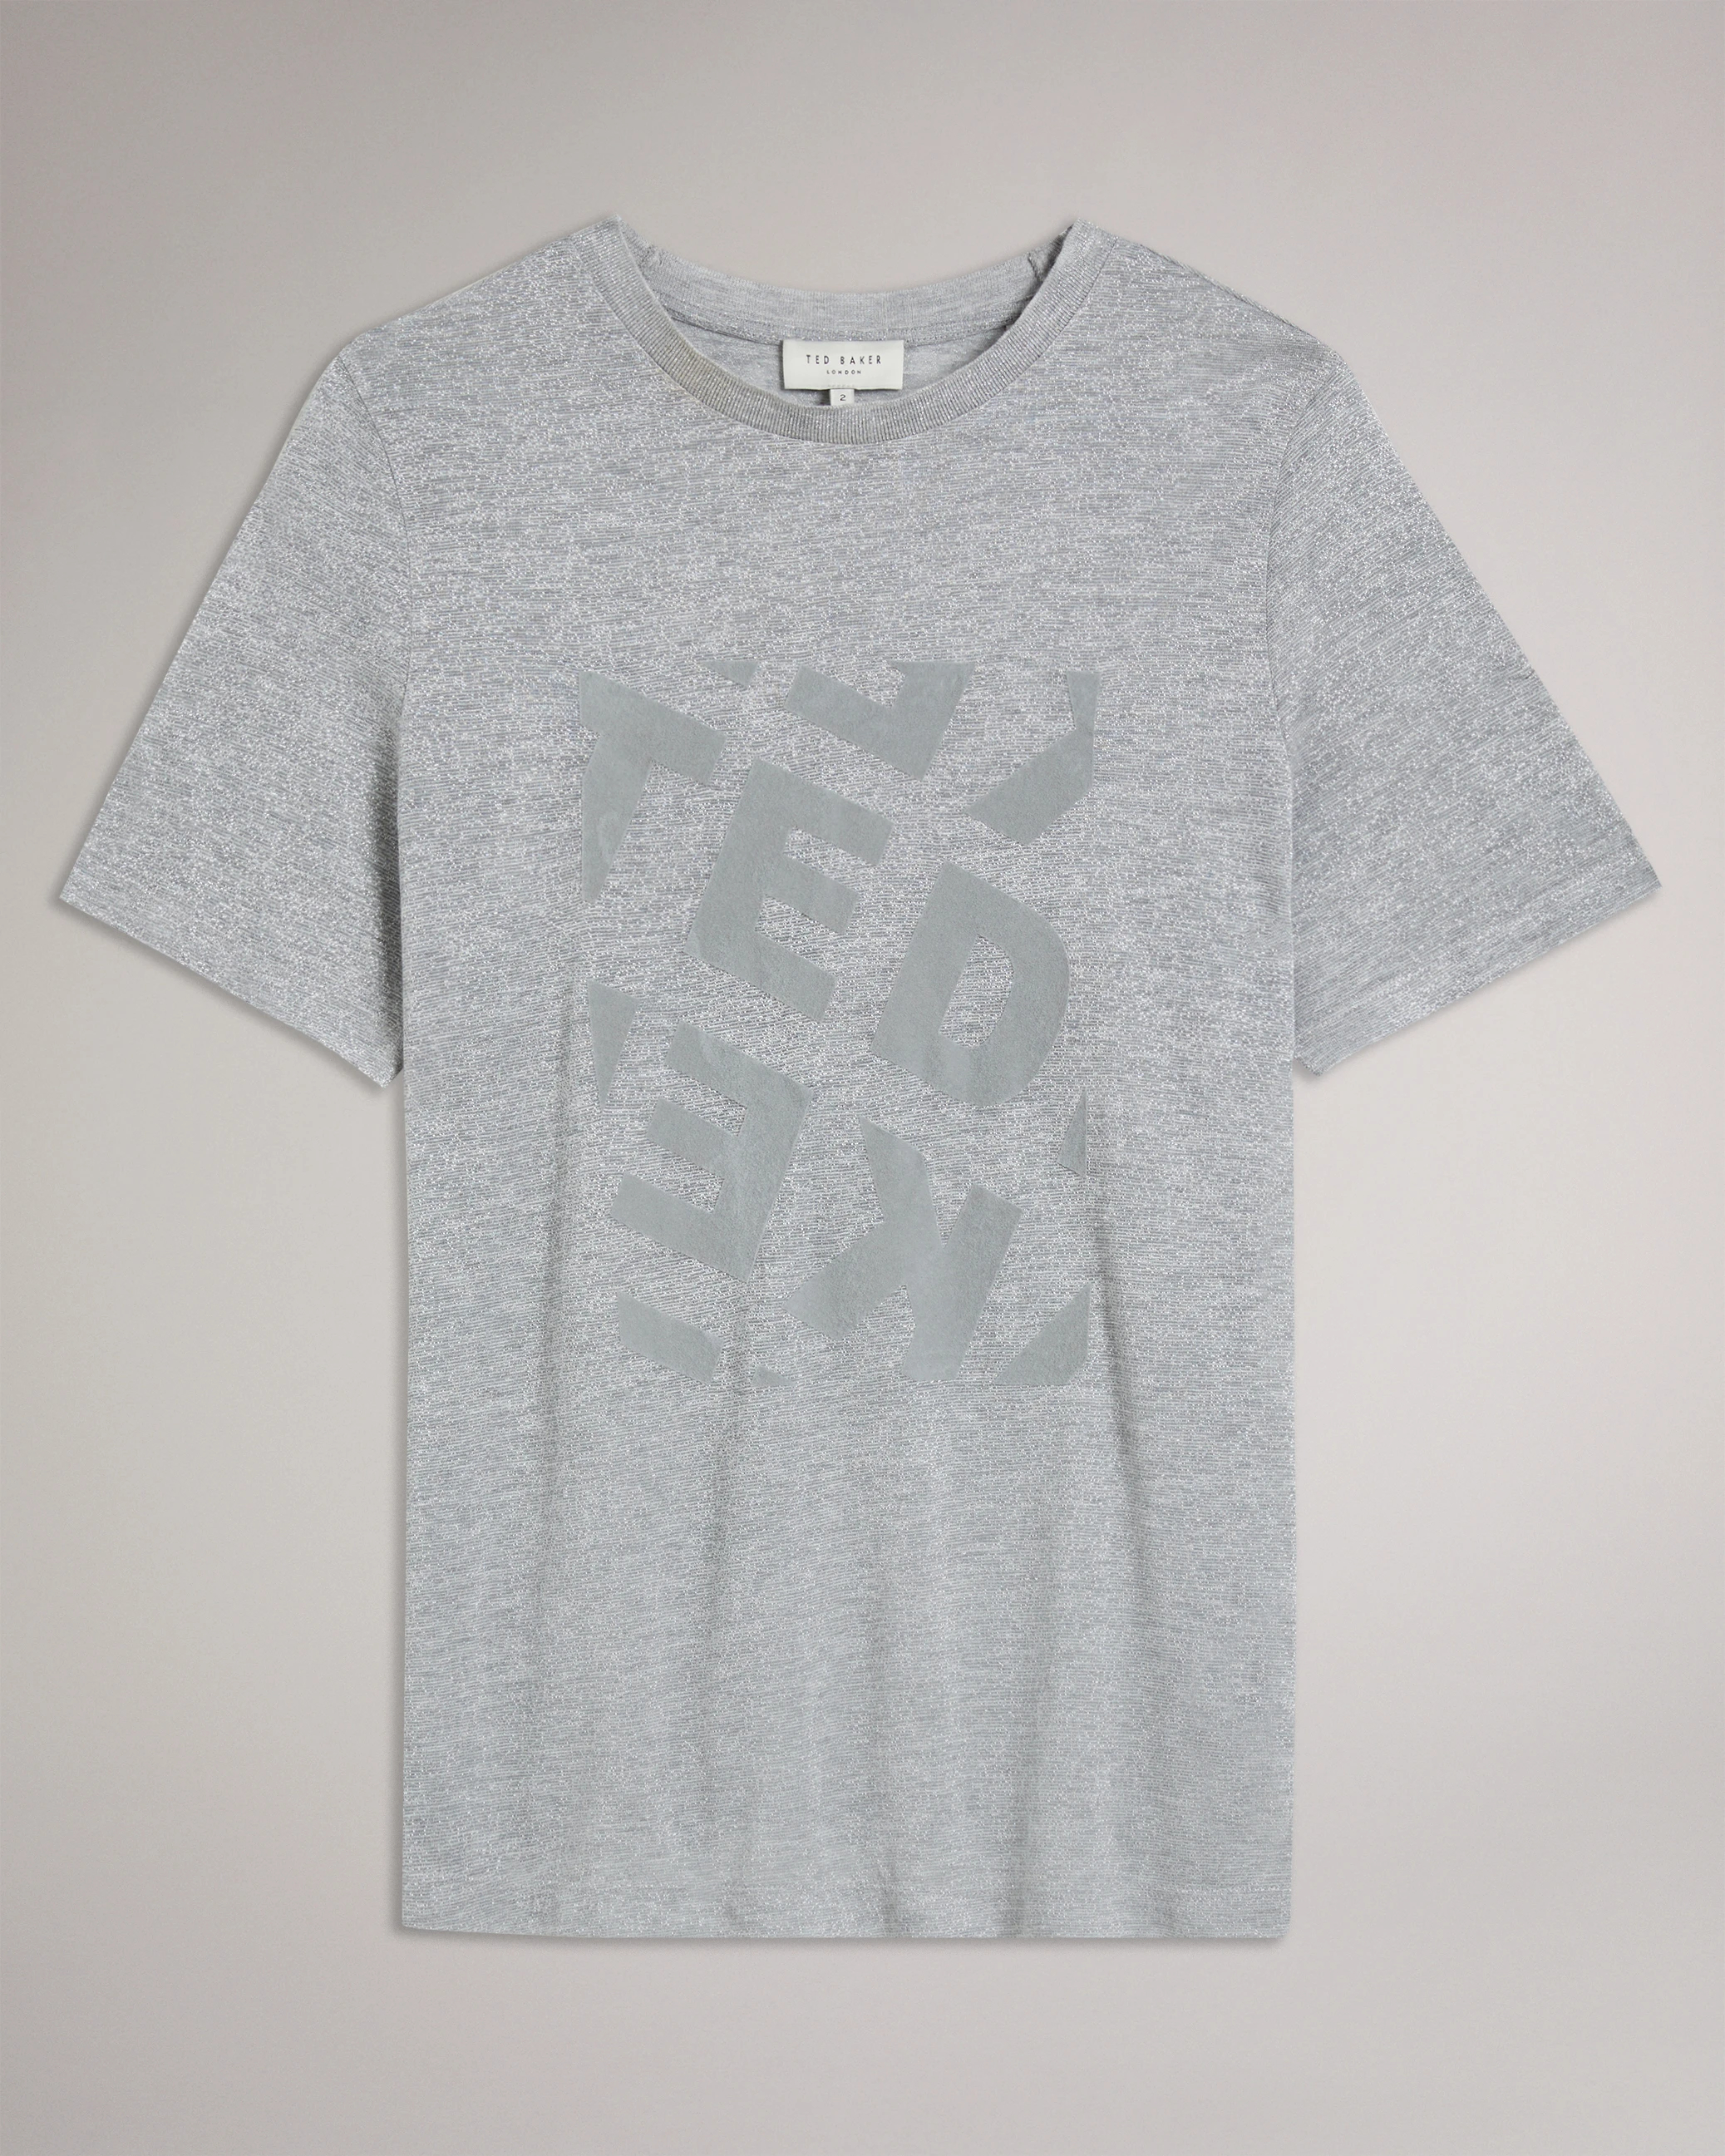 ロンドン限定 TED BAKER テッドベイカー 半袖 Tシャツ 3 M